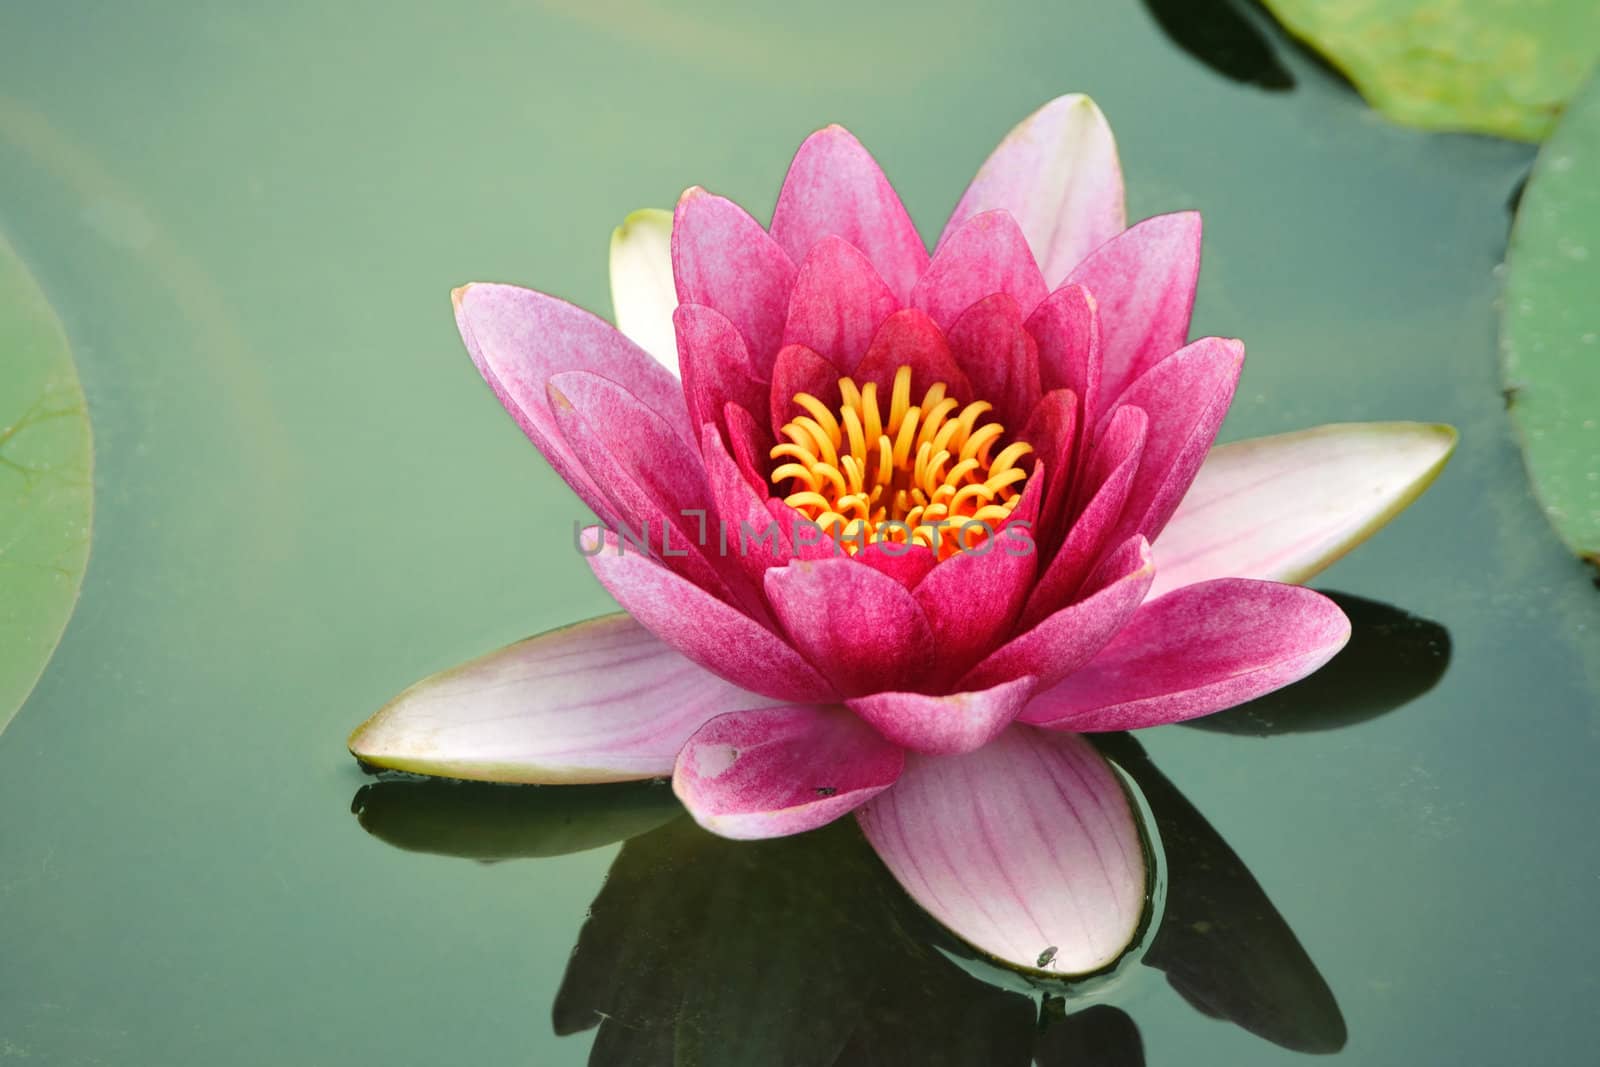 blossom lotus flower in Japanese pond; focus on flower